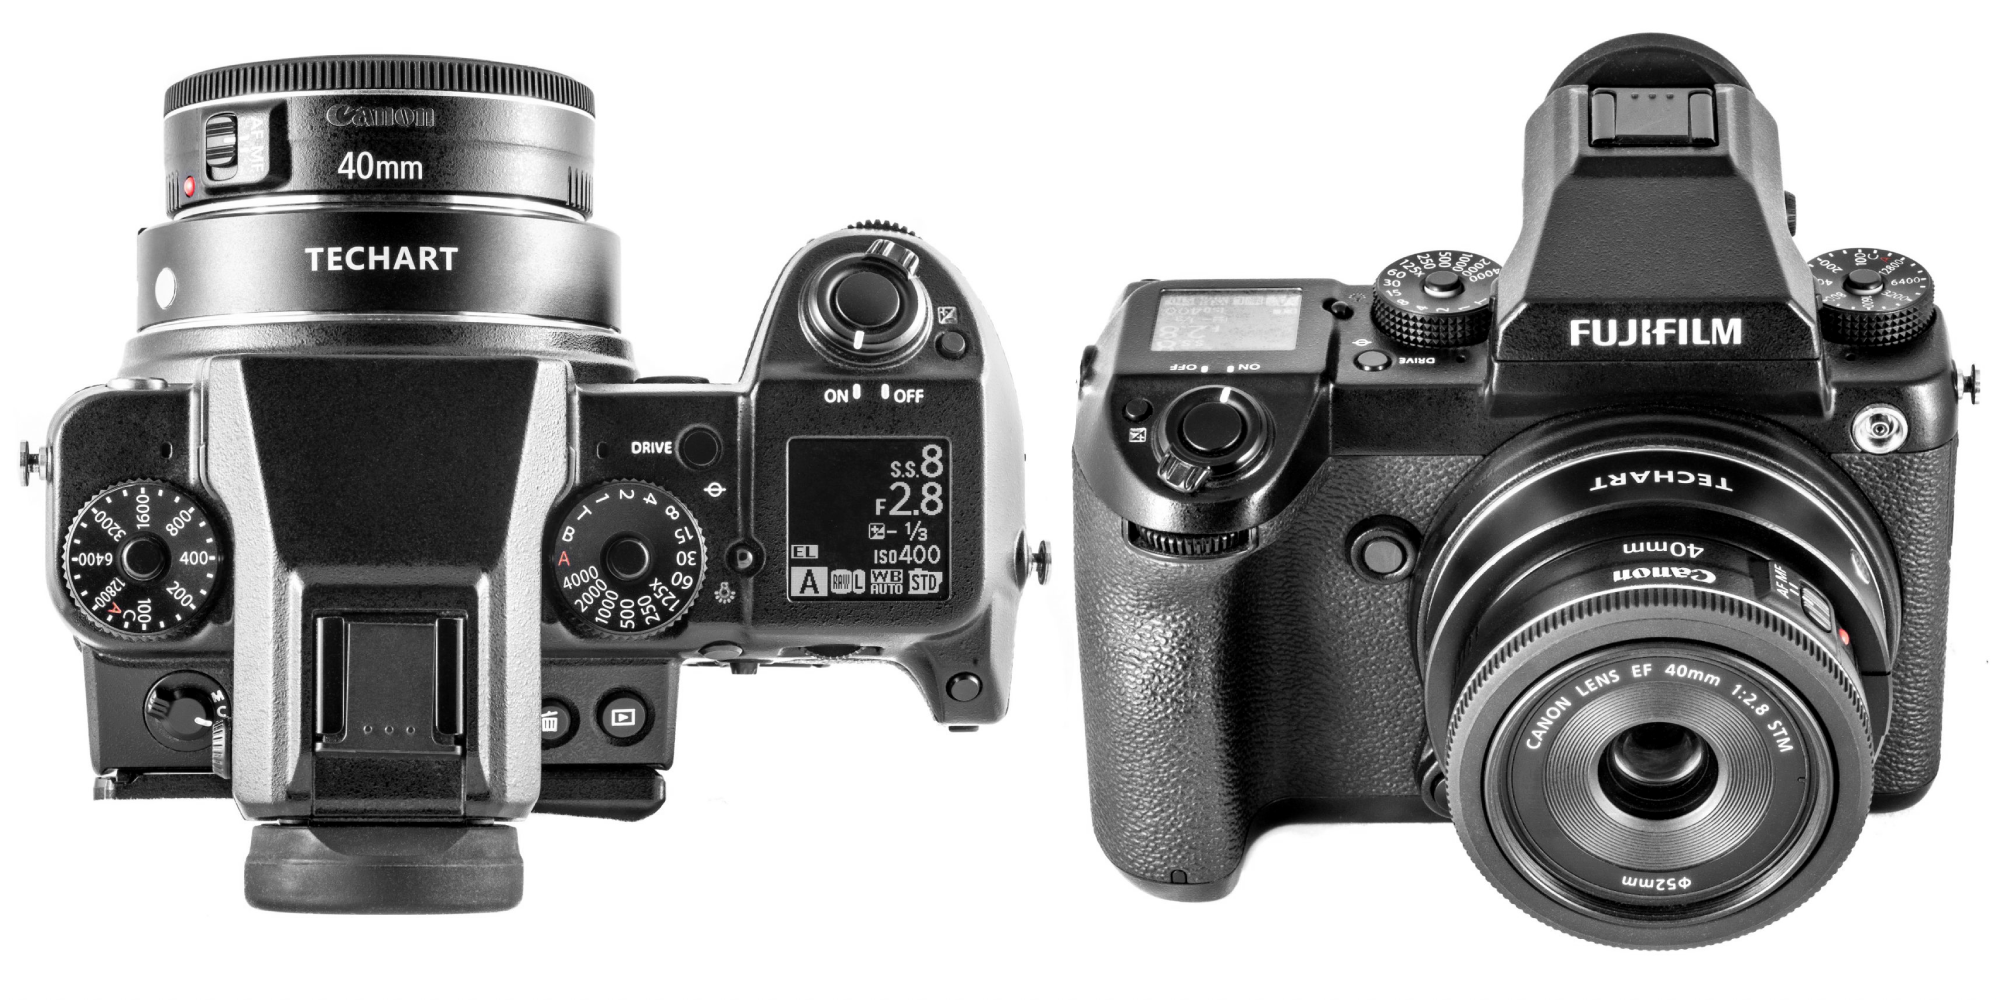 Adapter bagnetowy Techart EF-FG01 zamocowany na aparacie Fujifilm z obiektywem Canon 40 mm f/2,8 STM